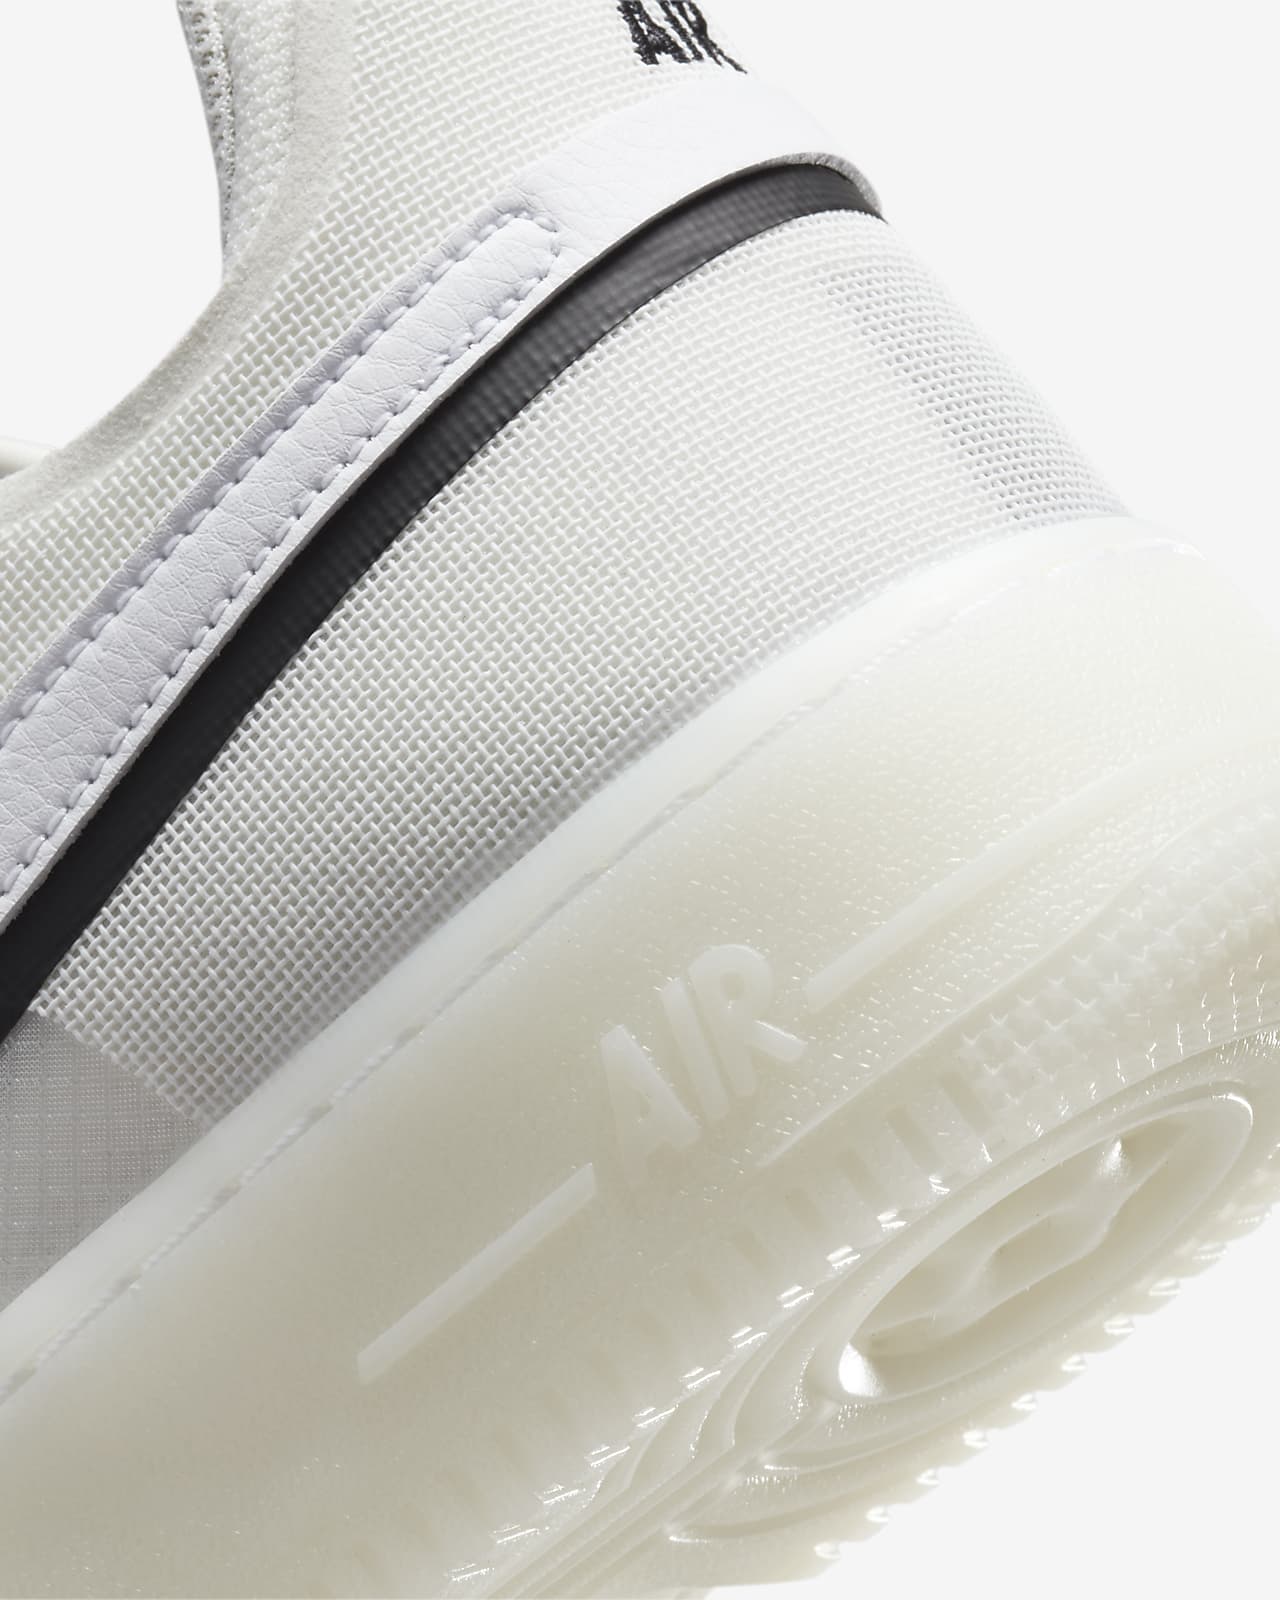 Nike Men's Air Force 1 '07 LV8 Sneaker - Black/Phantom/White/Light Silver